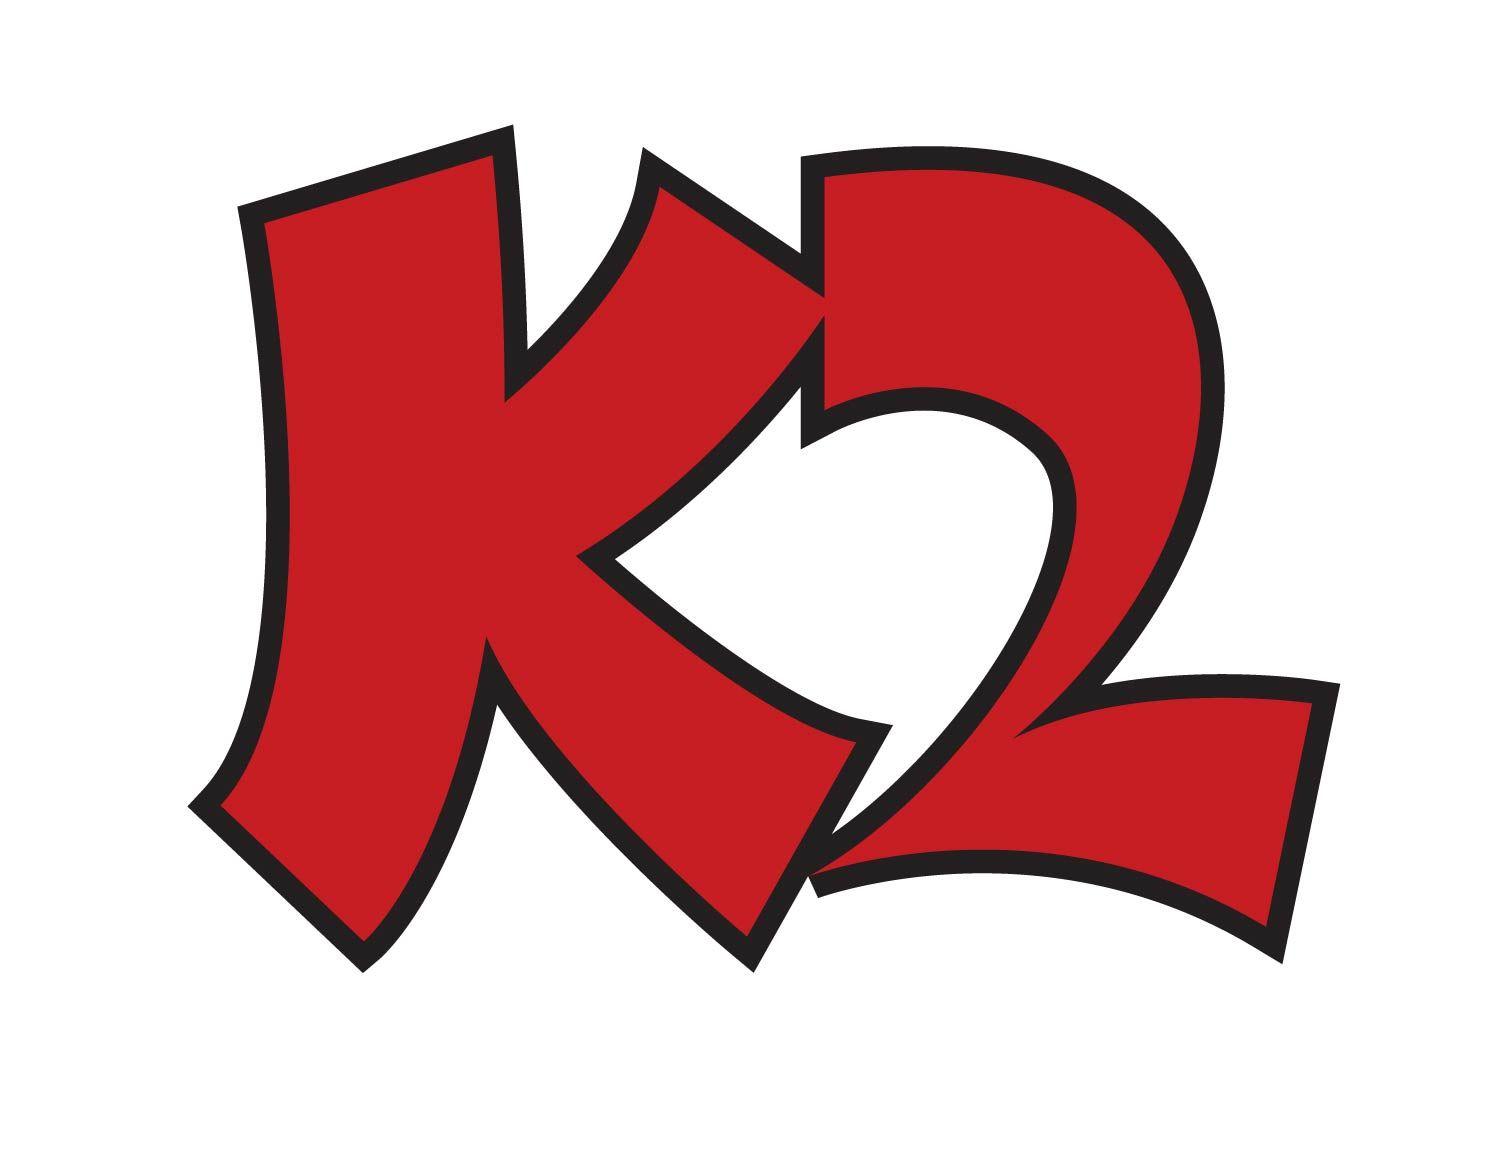 K2 Logo - File:K2 Europe logo.jpg - Wikimedia Commons